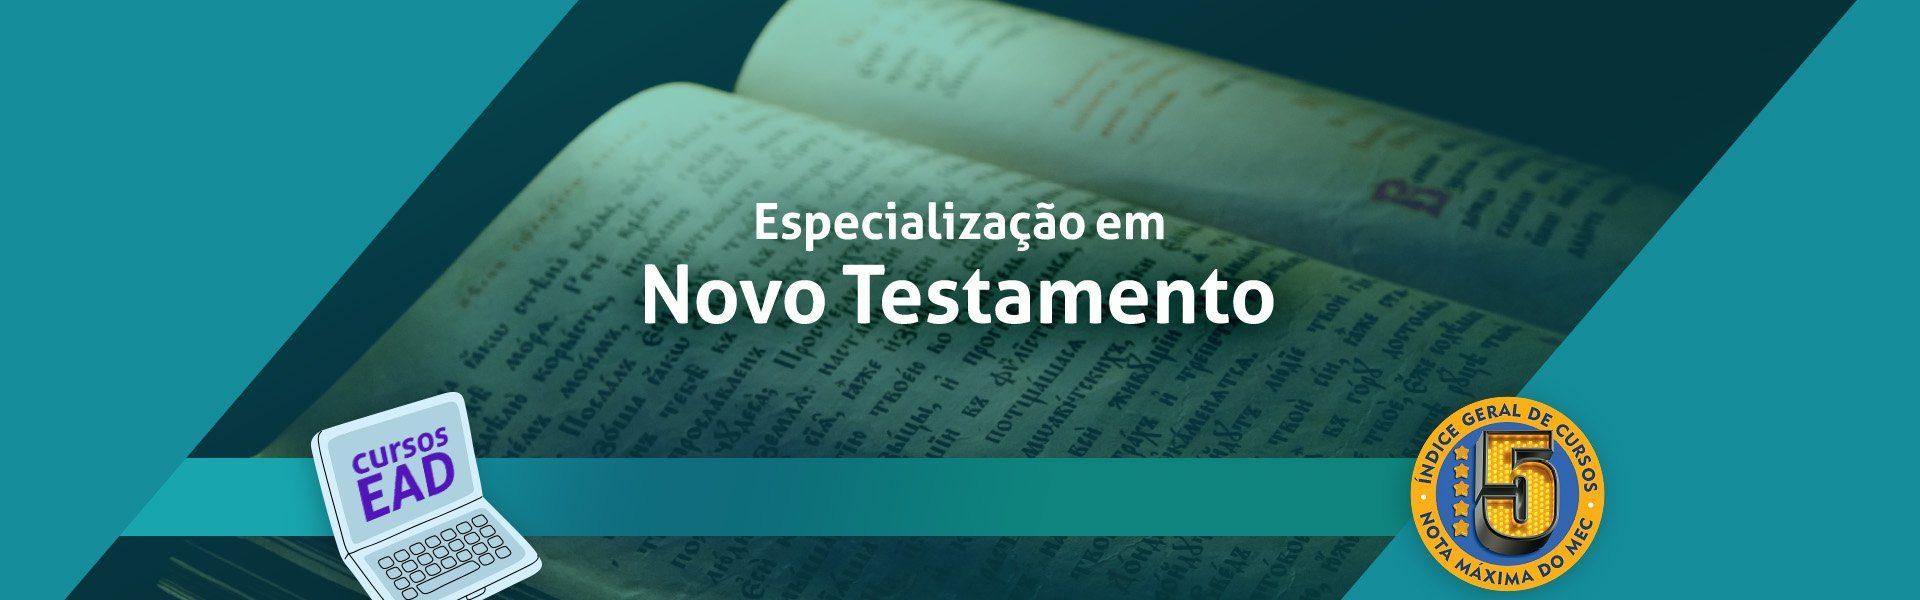 FE 009 24 - Banner SITE Novo Testamento EAD